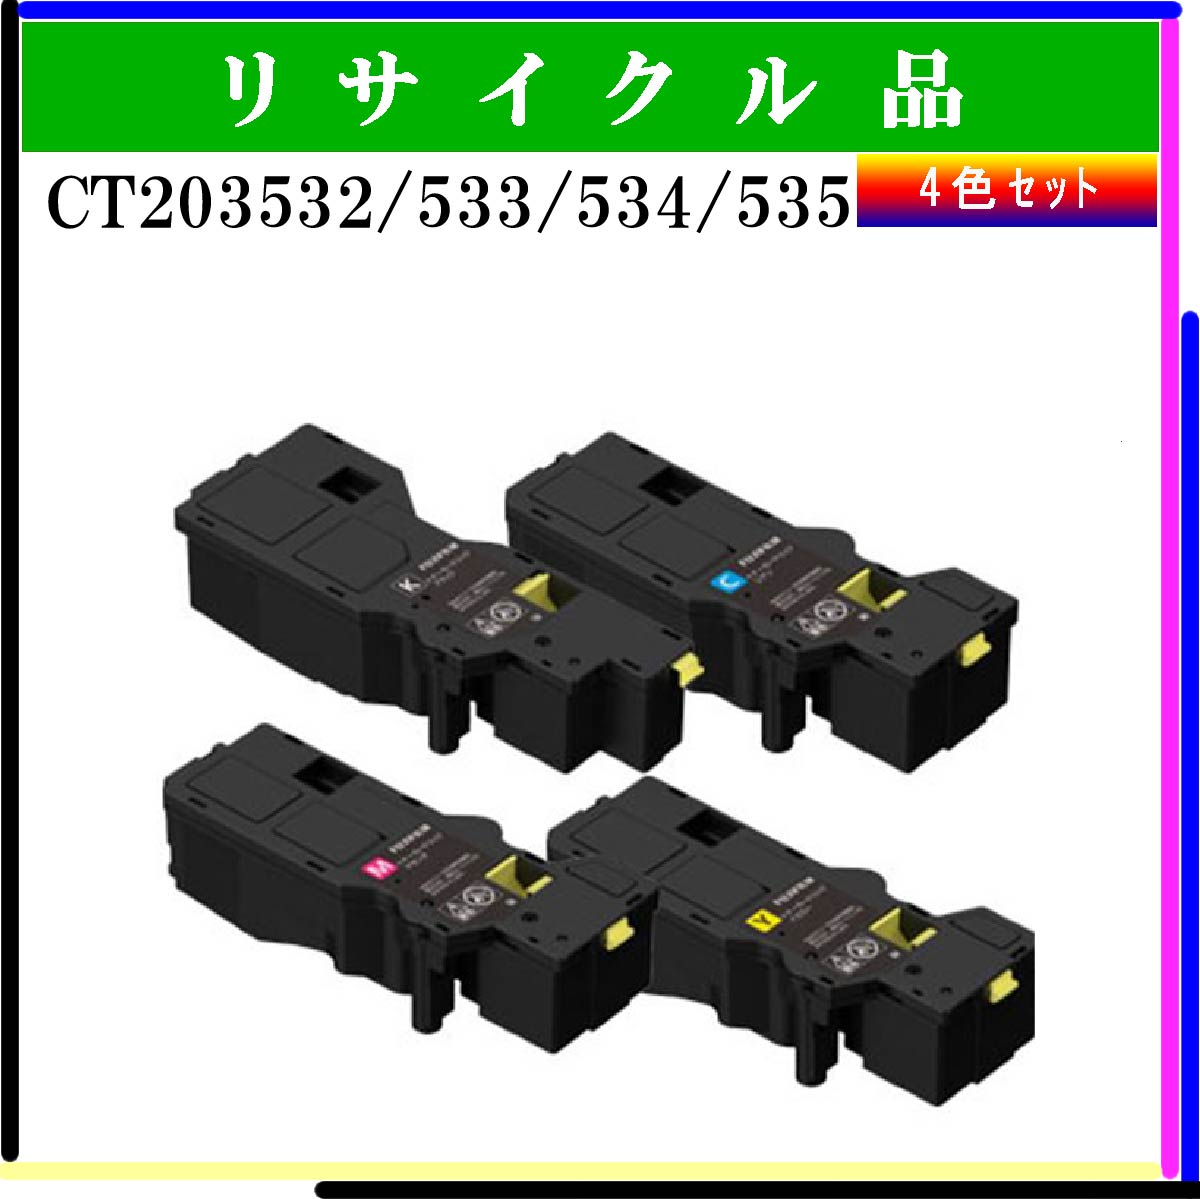 CT203532/533/534/535 (4色ｾｯﾄ)